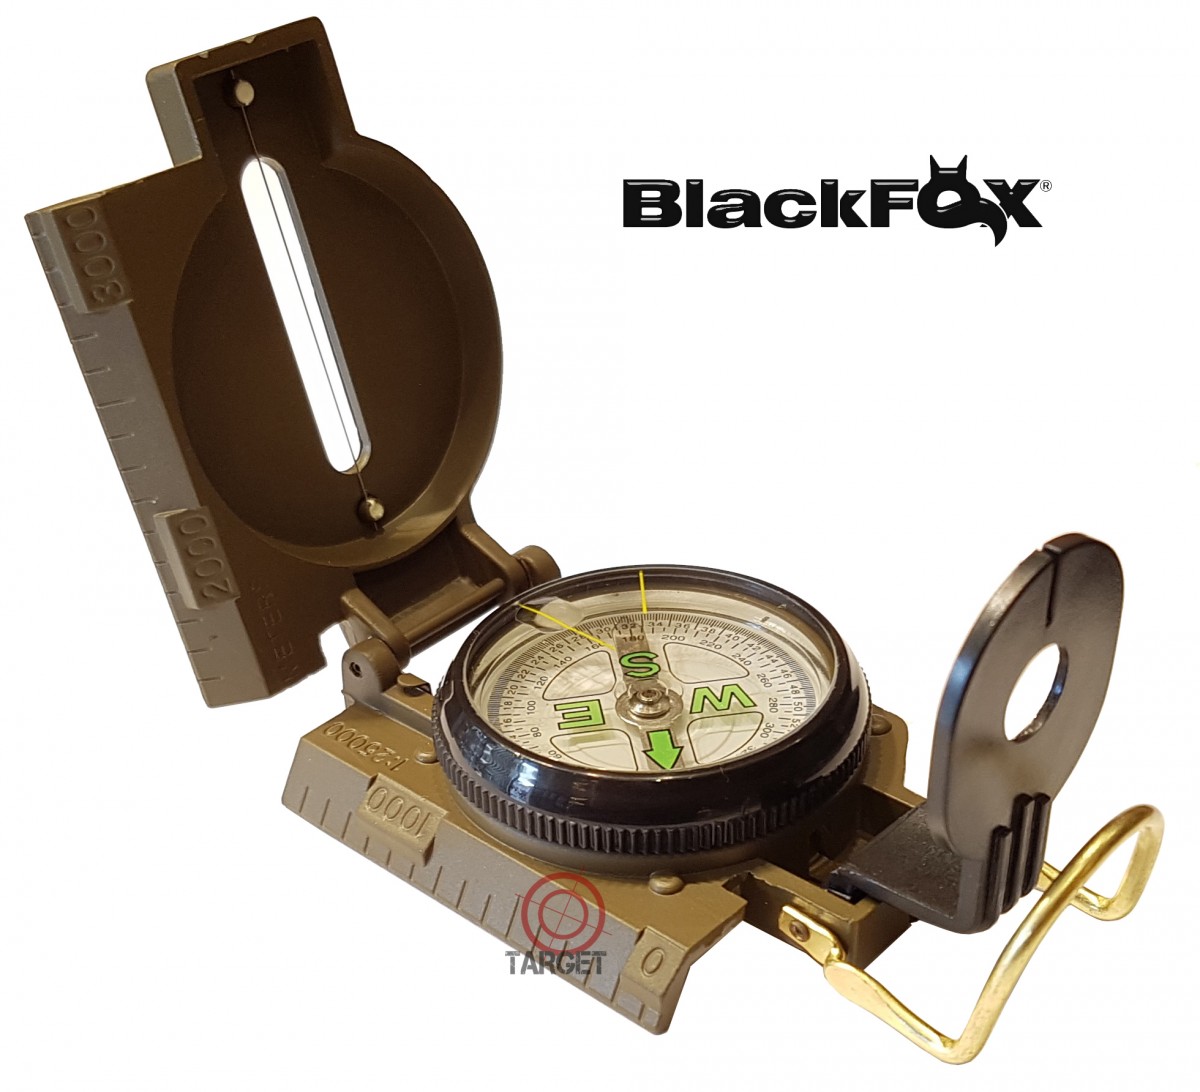 Vendita Blackfox bussola in metallo professionale, vendita online Blackfox  bussola in metallo professionale